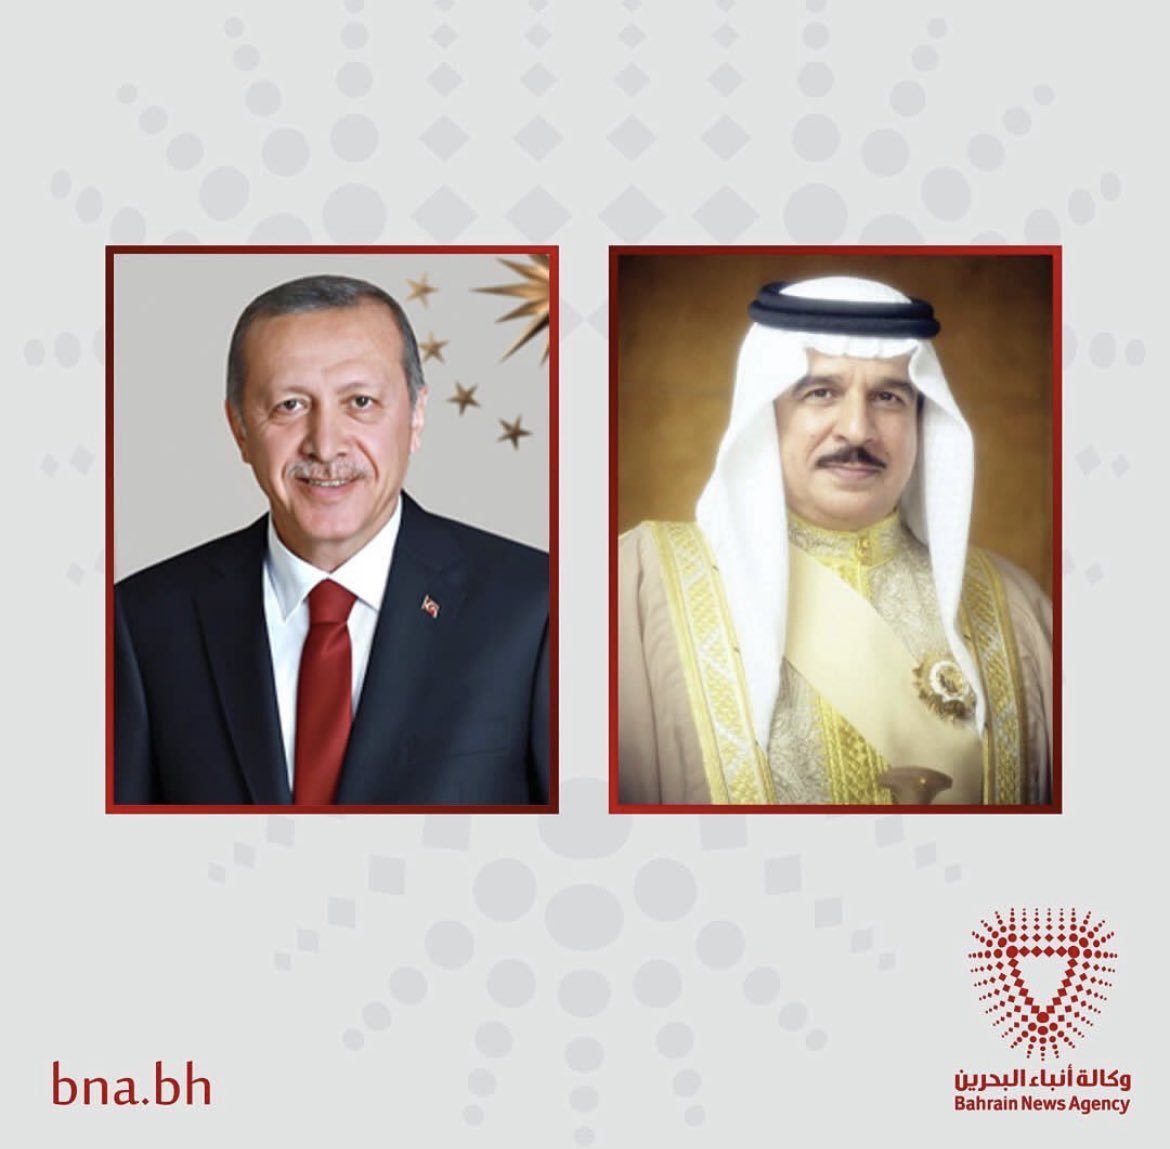 Bahreyn Kralı Hamad bin Isa Al Khalifa, Sayın Cumhurbaşkanımızı arayarak göreve yeniden seçilmeleri vesilesiyle tebrik dileklerini iletmiştir.

bna.bh/en/HMKingcongr…